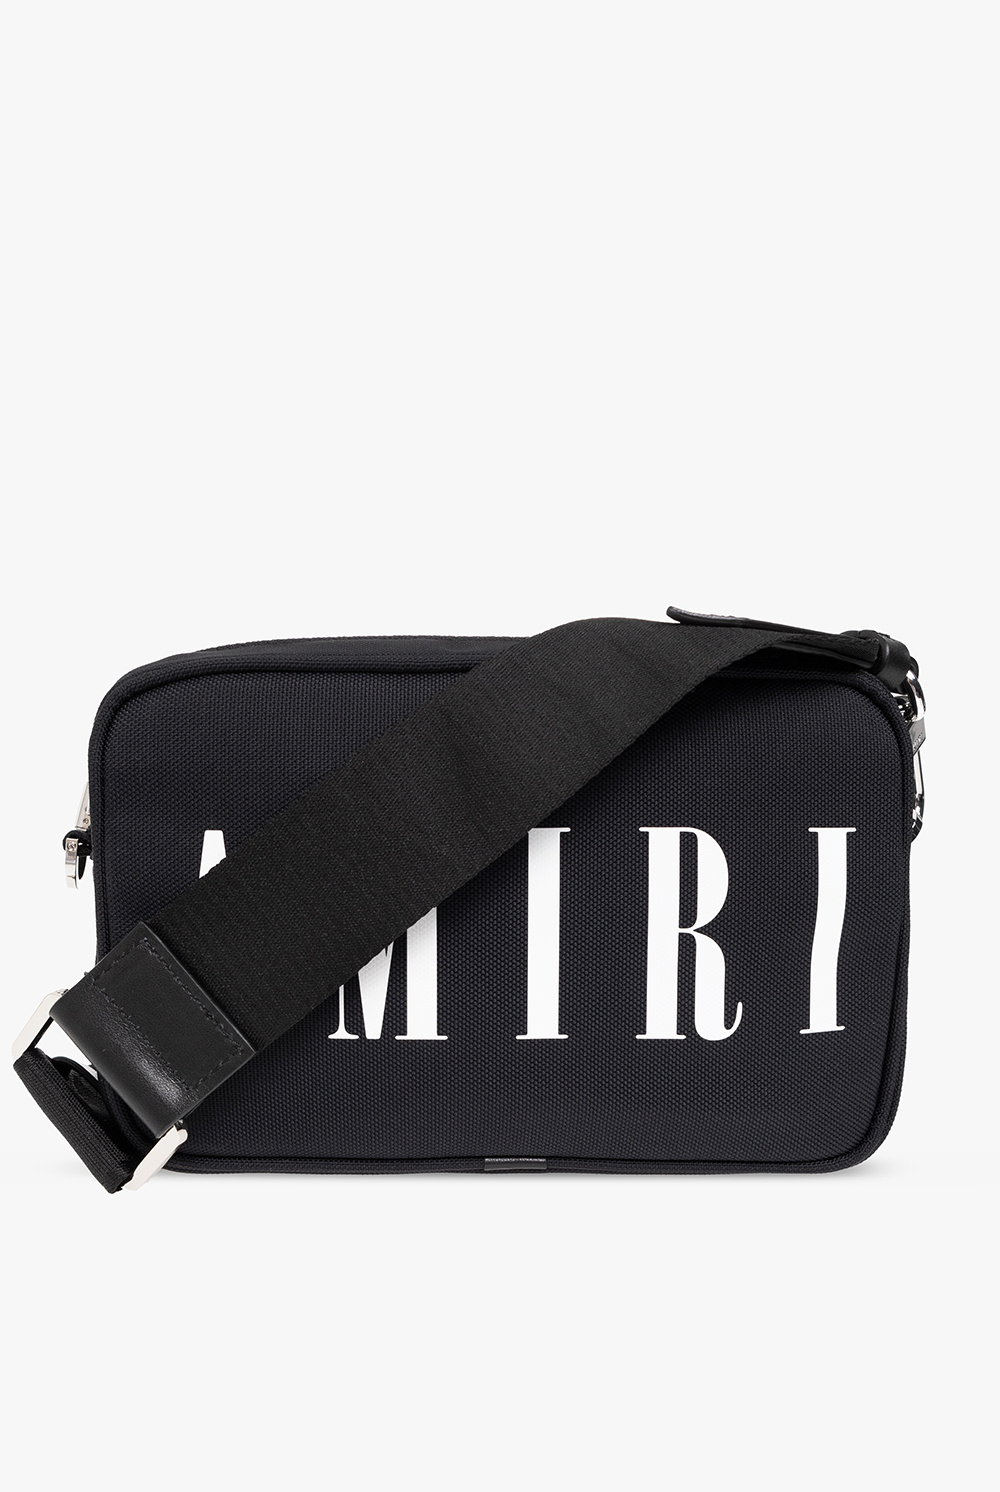 Amiri Shoulder bag with logo | Men's Bags | Vitkac